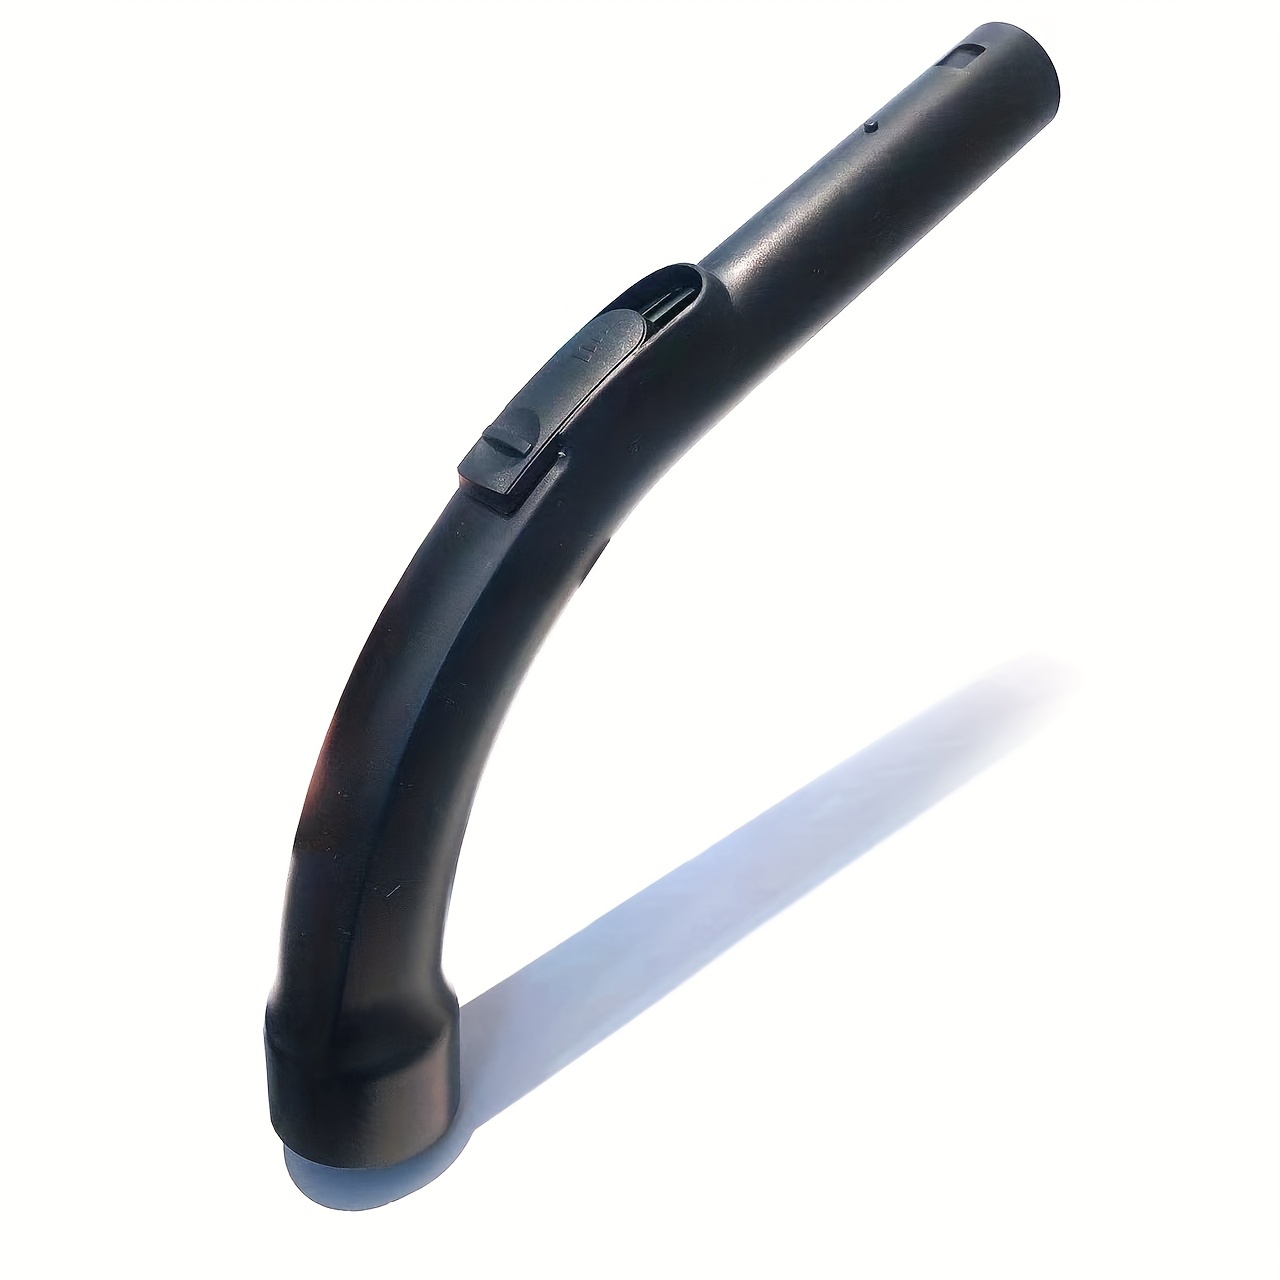 Tubo aspirapolvere (tubo flessibile) completo per Miele ⌀ 35mm con  impugnatura a pistola (maniglia) e raccordo (pressacavo) grigio nero  aspirapolvere 10563760